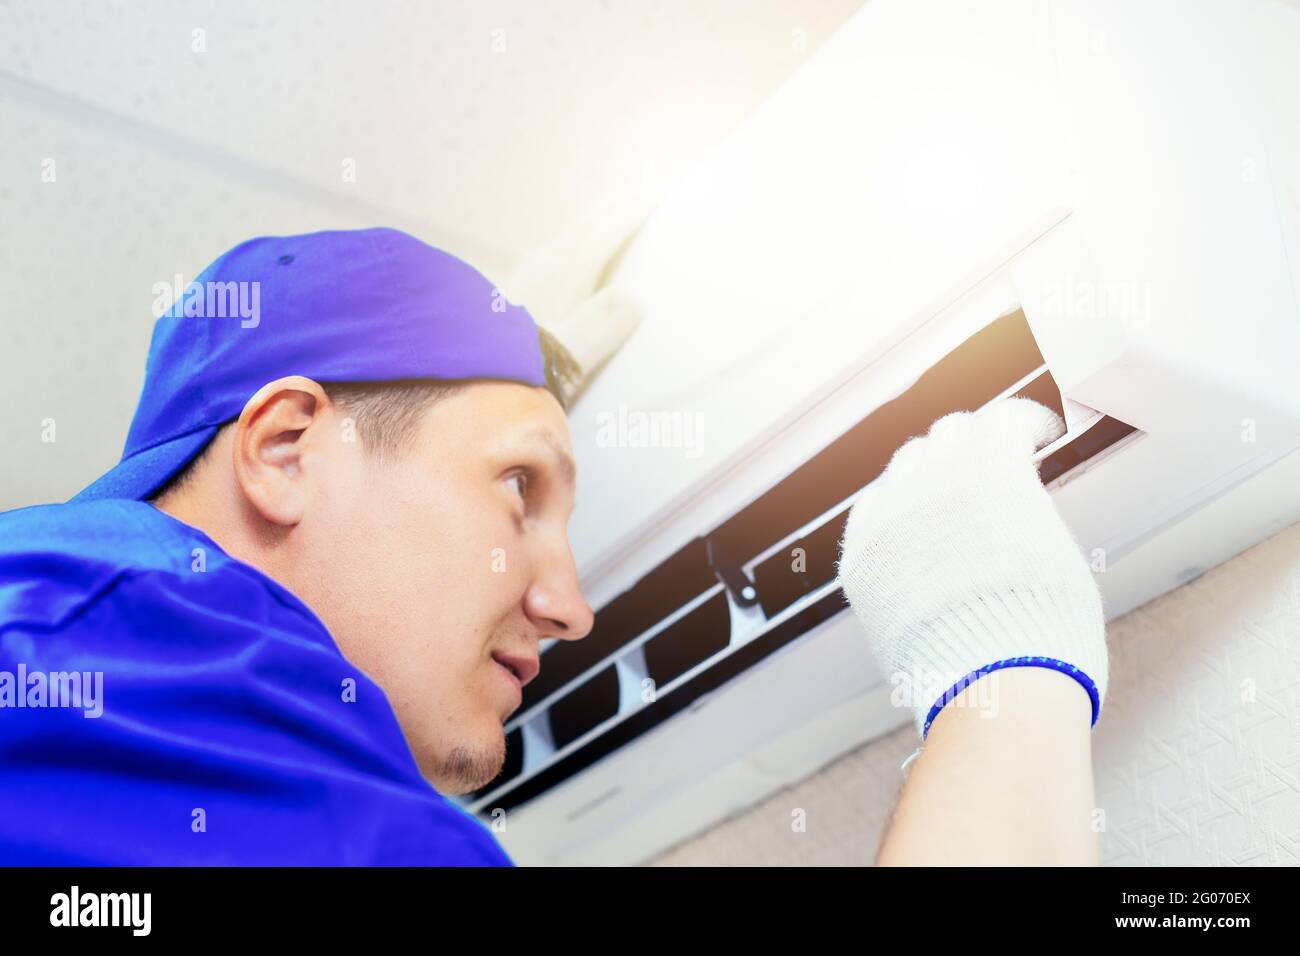 Ein junger Arbeiter mit blauer Baseballmütze und Handschuhen inspiziert und wartet die Klimaanlage im Zimmer. Porträt eines Technikers bei der Arbeit. Nahaufnahme. Modell Stockfoto